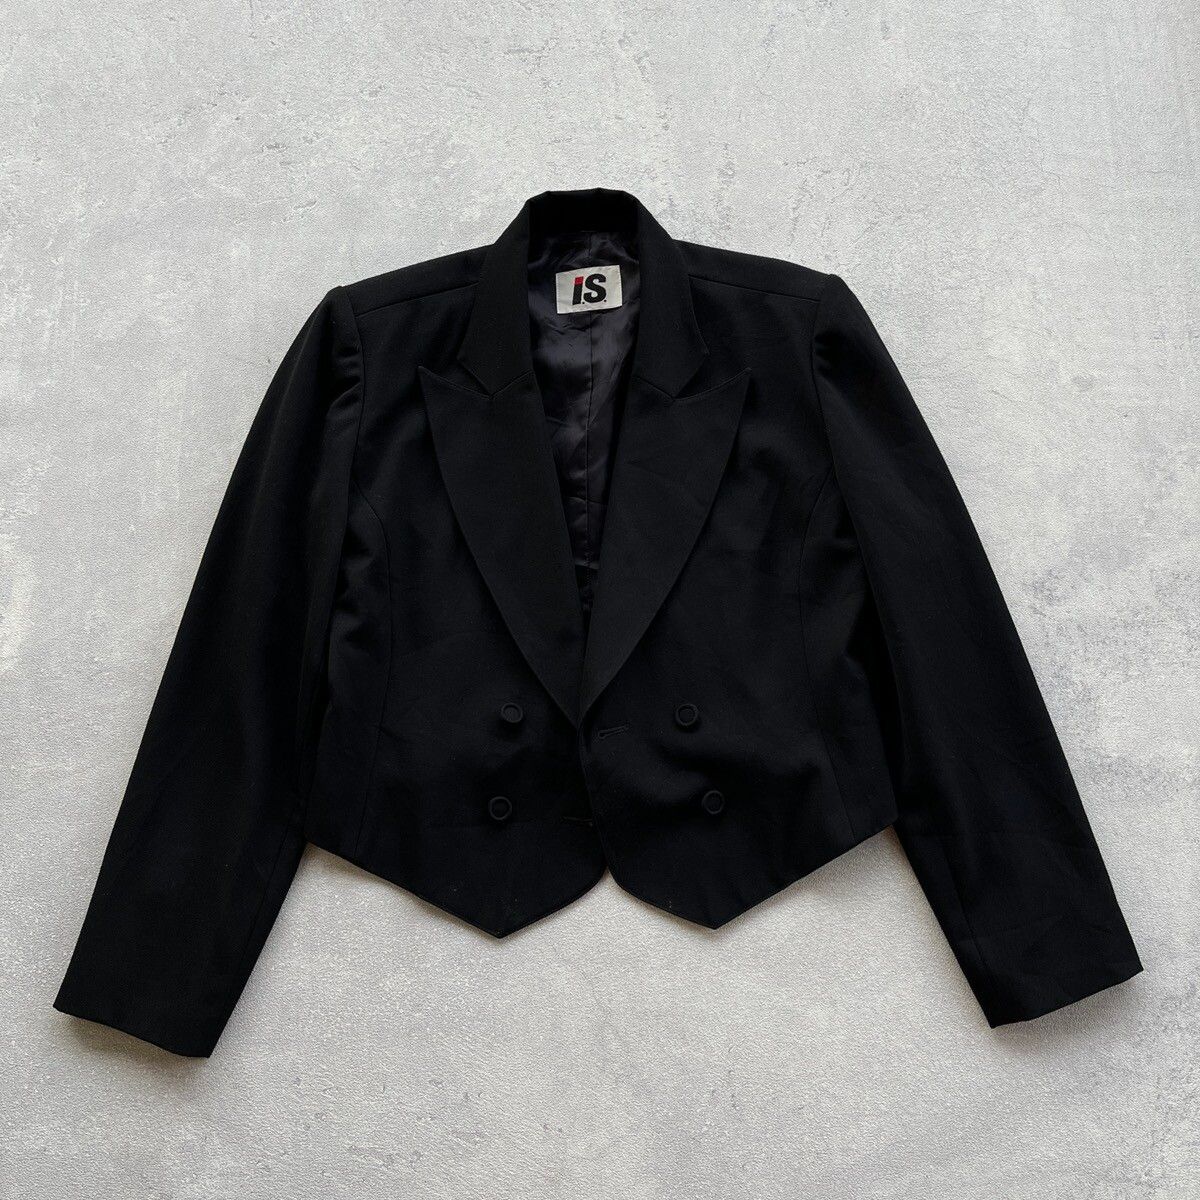 Vintage Issey Miyake Crop Top Suit blazer | Grailed